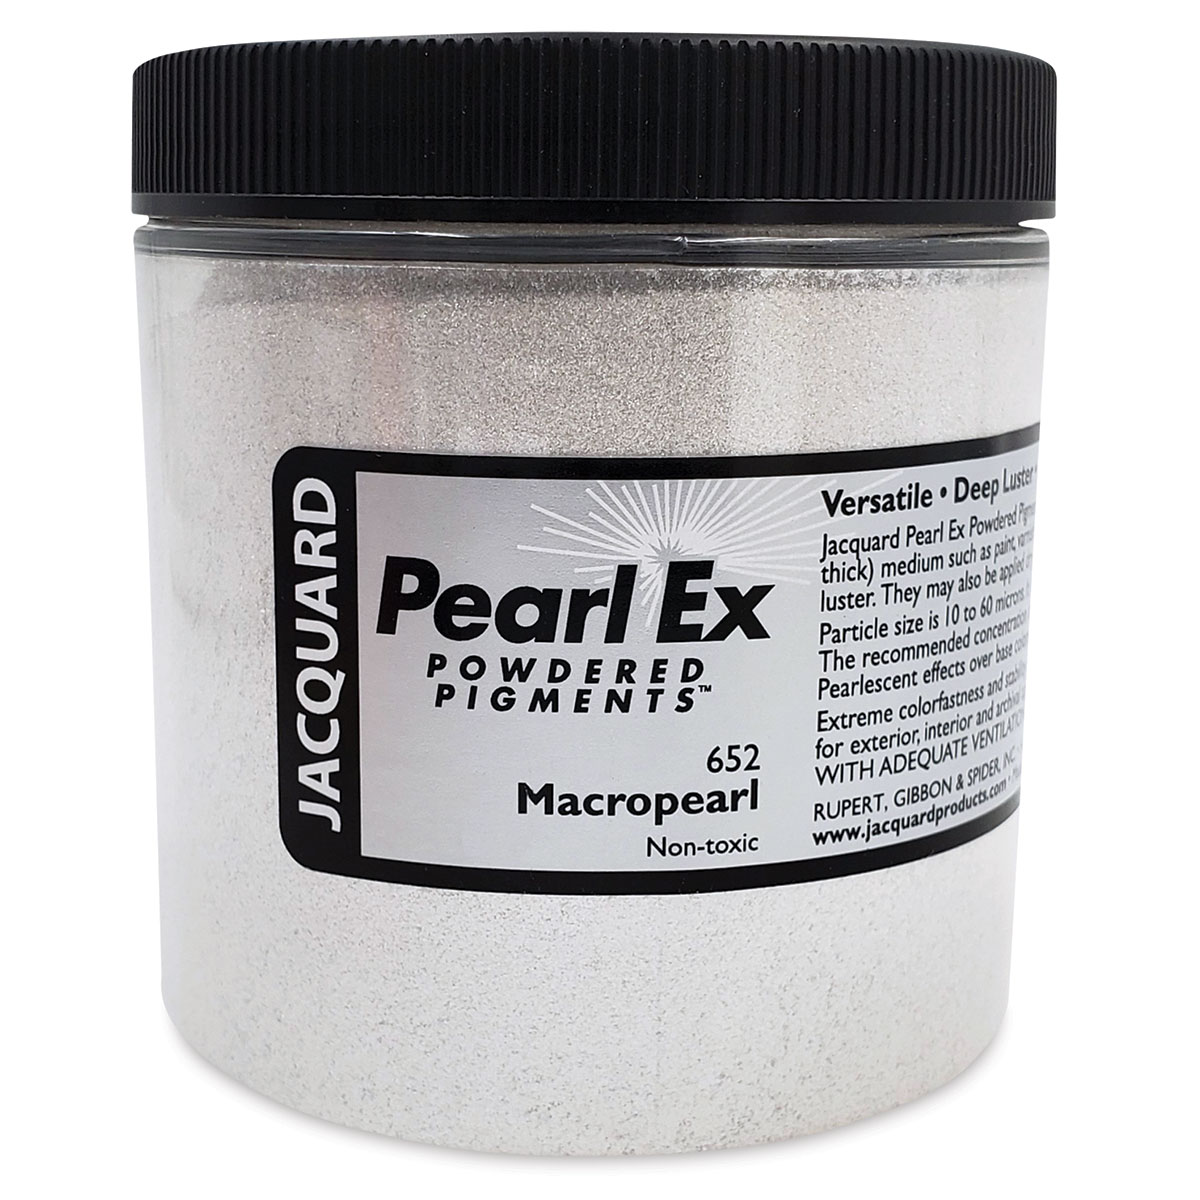 Jacquard Pearl-Ex Pigment - 4 oz, Macropearl, Jar